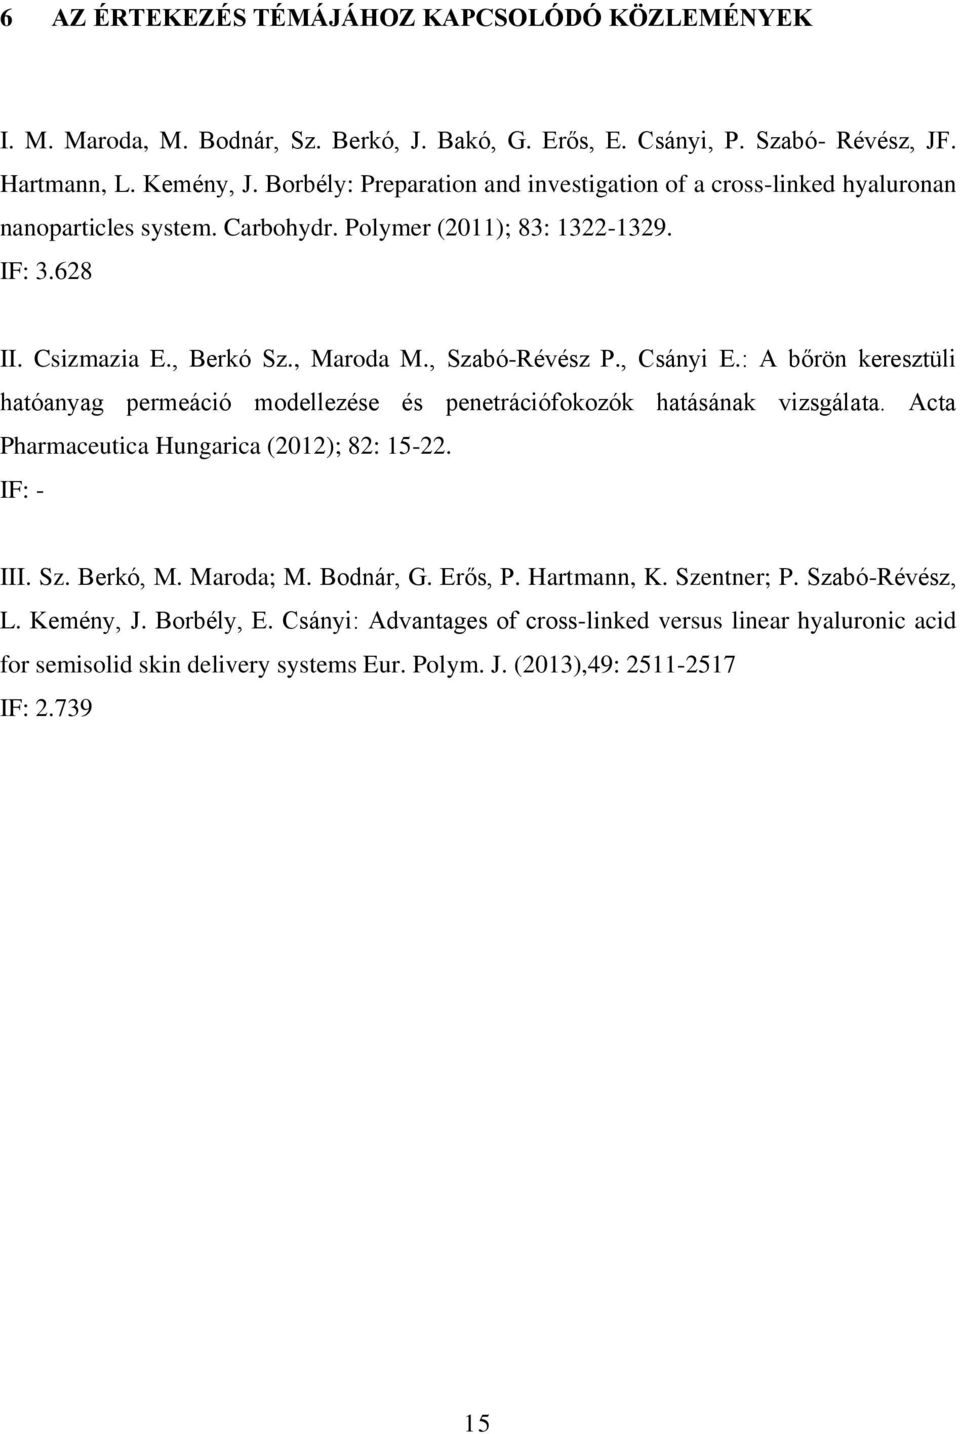 , Szabó-Révész P., Csányi E.: A bőrön keresztüli hatóanyag permeáció modellezése és penetrációfokozók hatásának vizsgálata. Acta Pharmaceutica Hungarica (2012); 82: 15-22. IF: - III. Sz. Berkó, M.